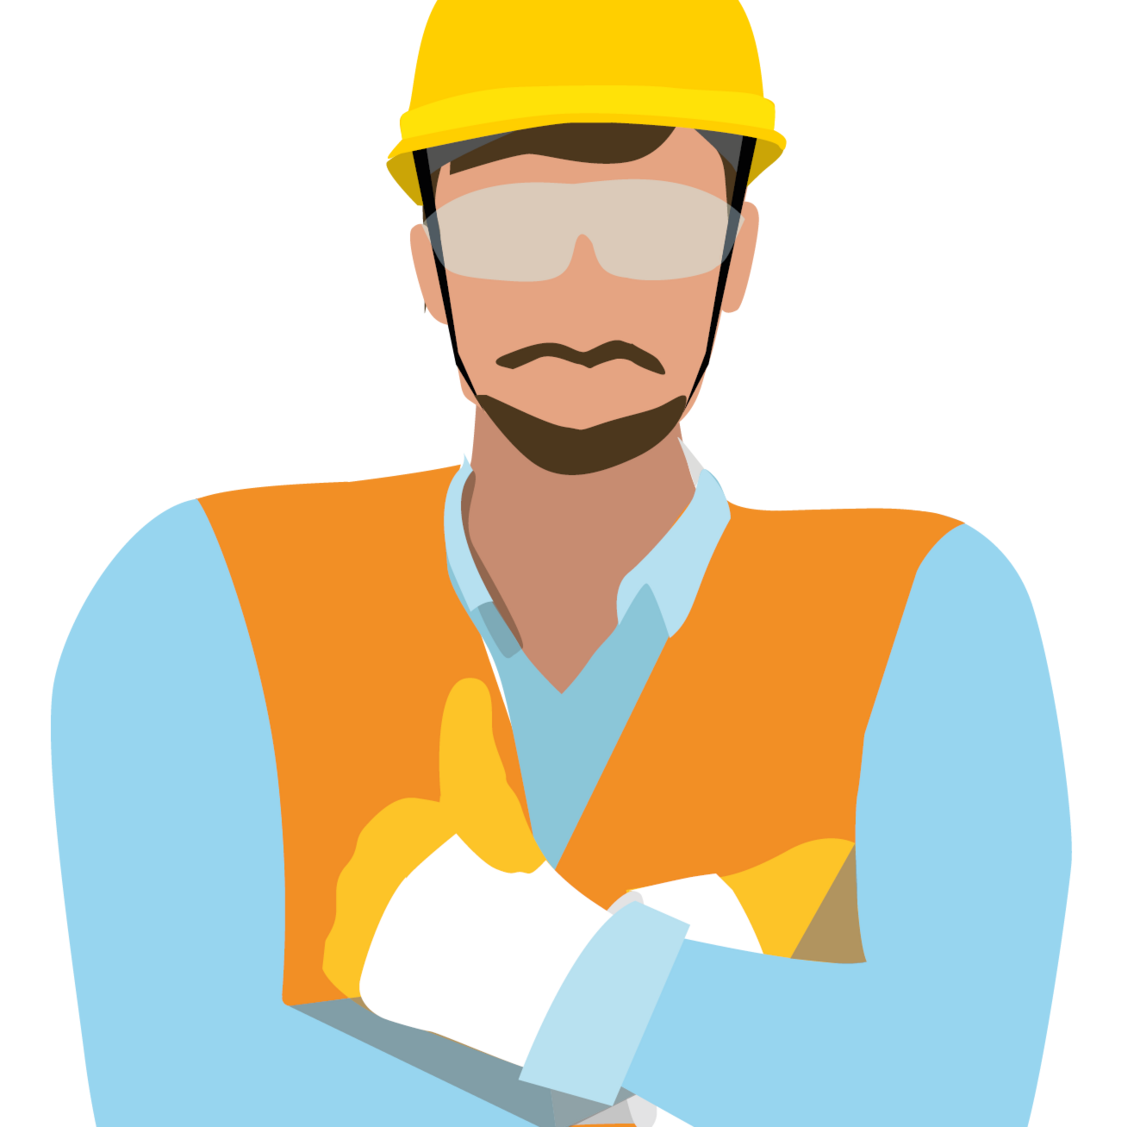 Illustration eines Bauarbeiters mit Schutzhelm, Vier-Punkt-Kinnriemen und Warnweste.
